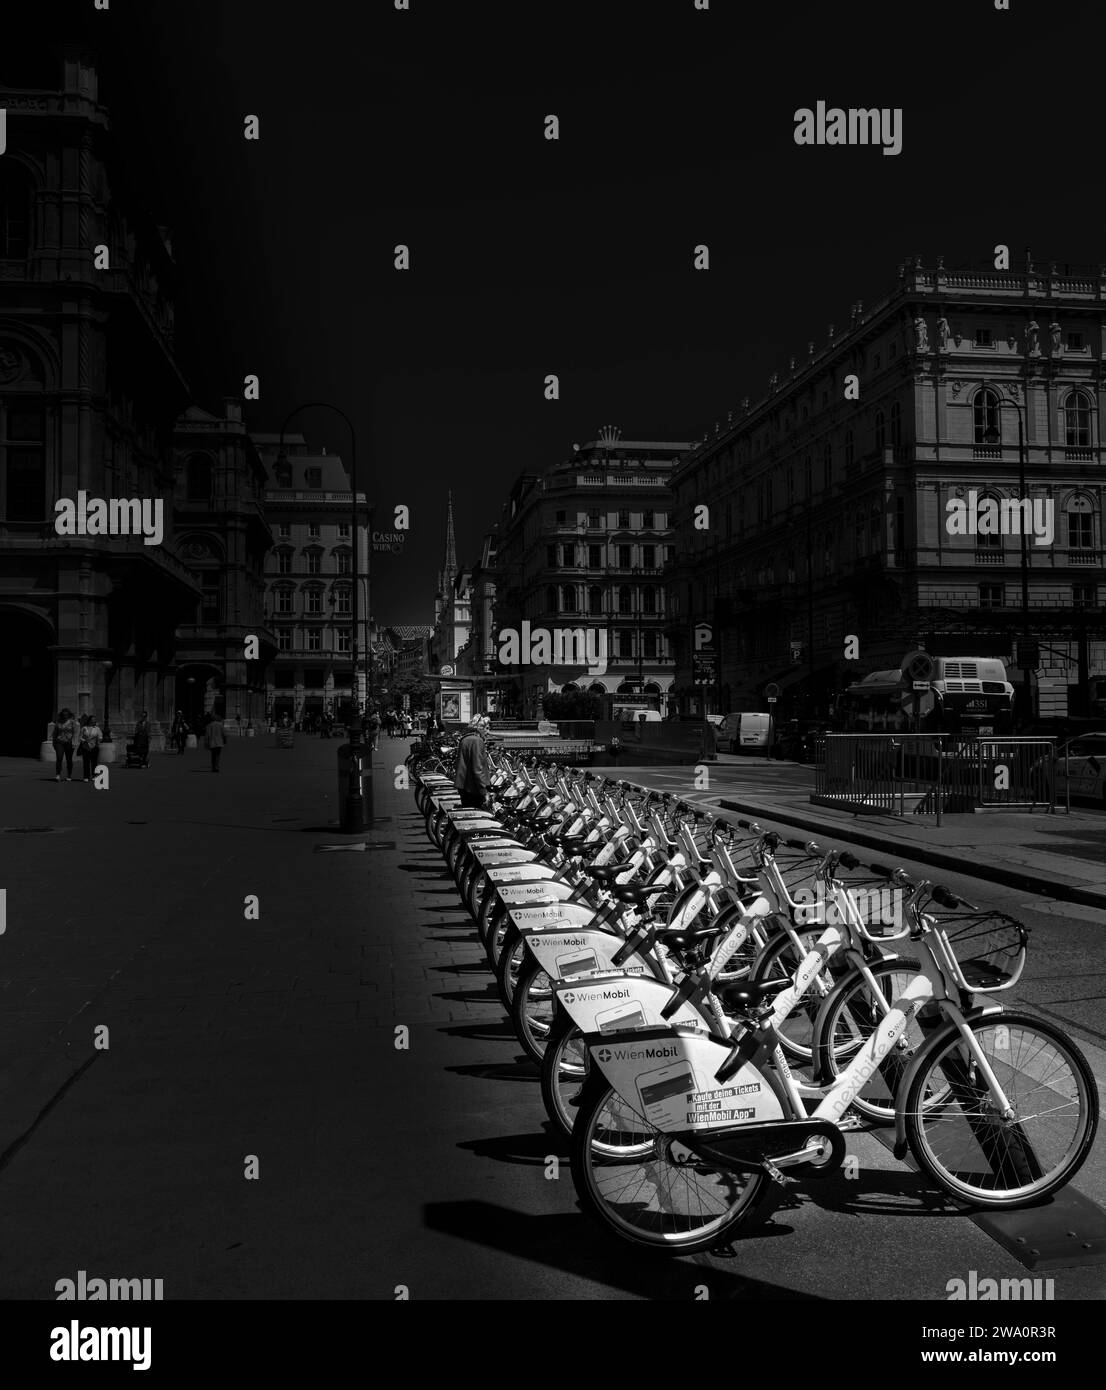 Photographie noir et blanc, Wien Mobil, parking pour location de vélos, Vienne, Autriche, Europe Banque D'Images